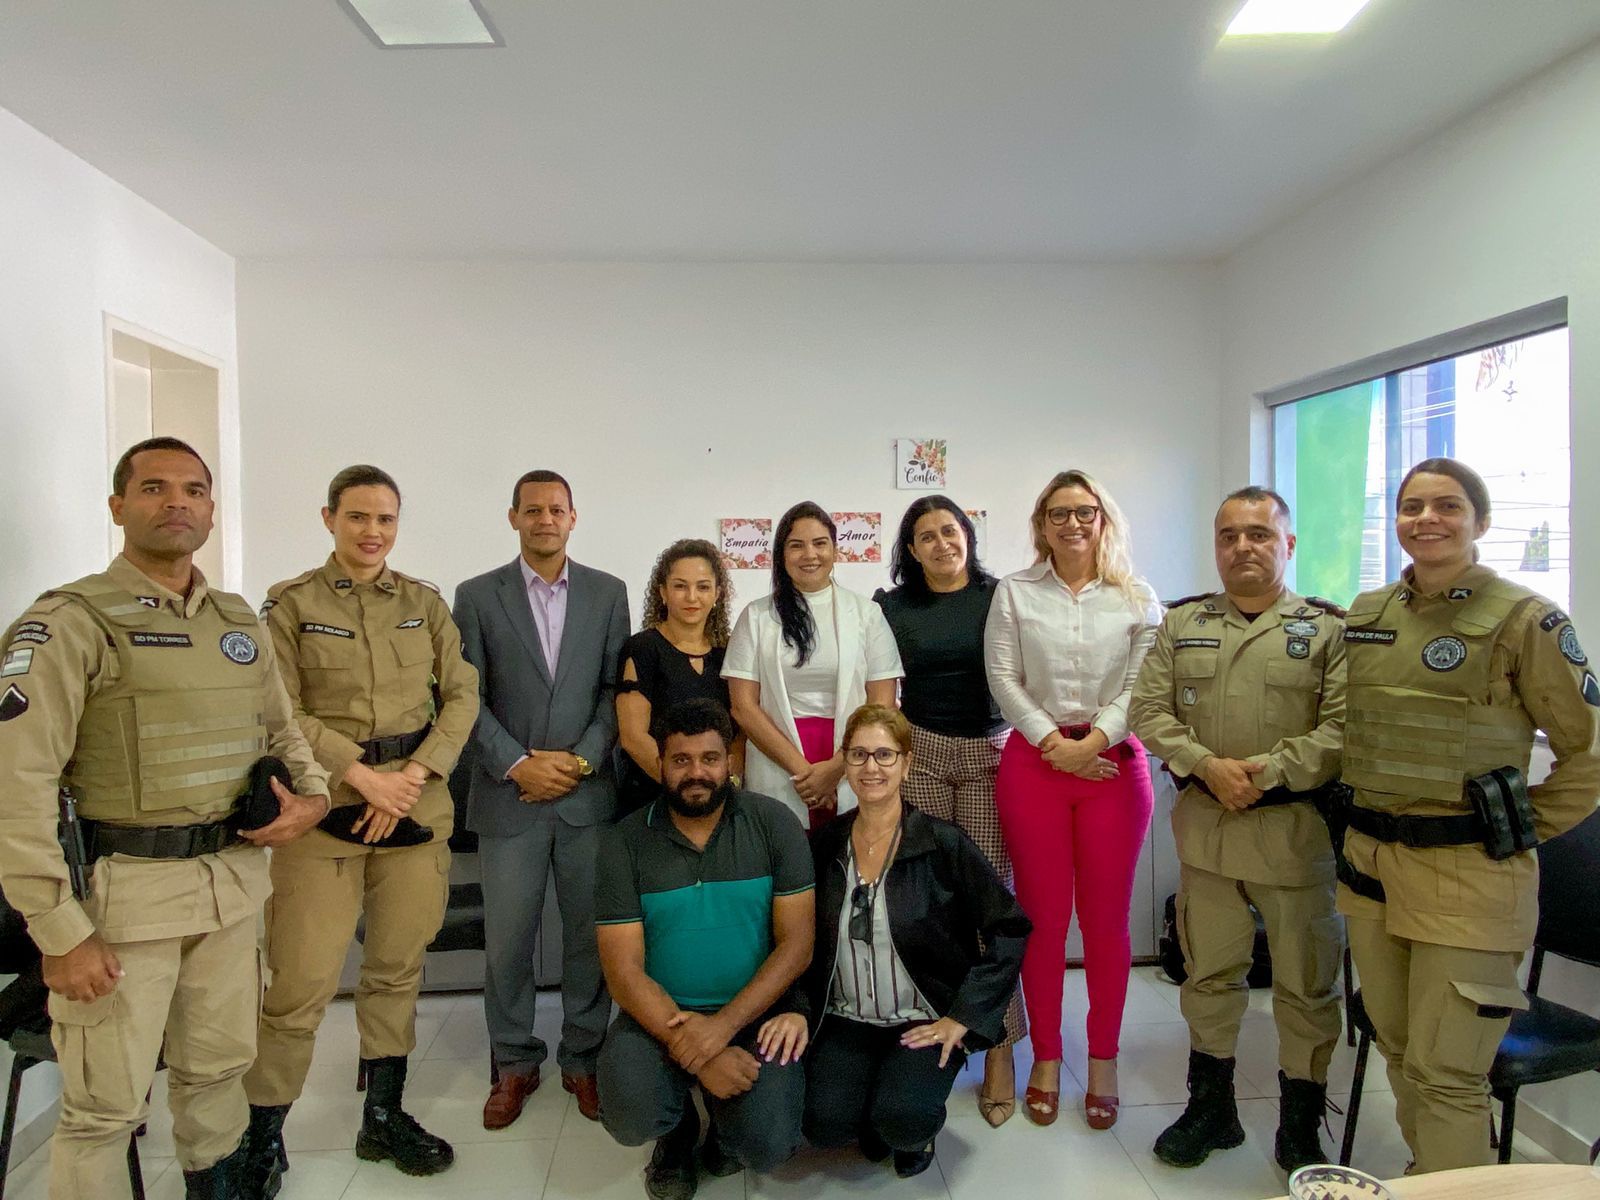 Equipe da Secretaria de Assistência Social fortalece vínculos com Polícia Militar no combate à violência doméstica em Eunápolis 9